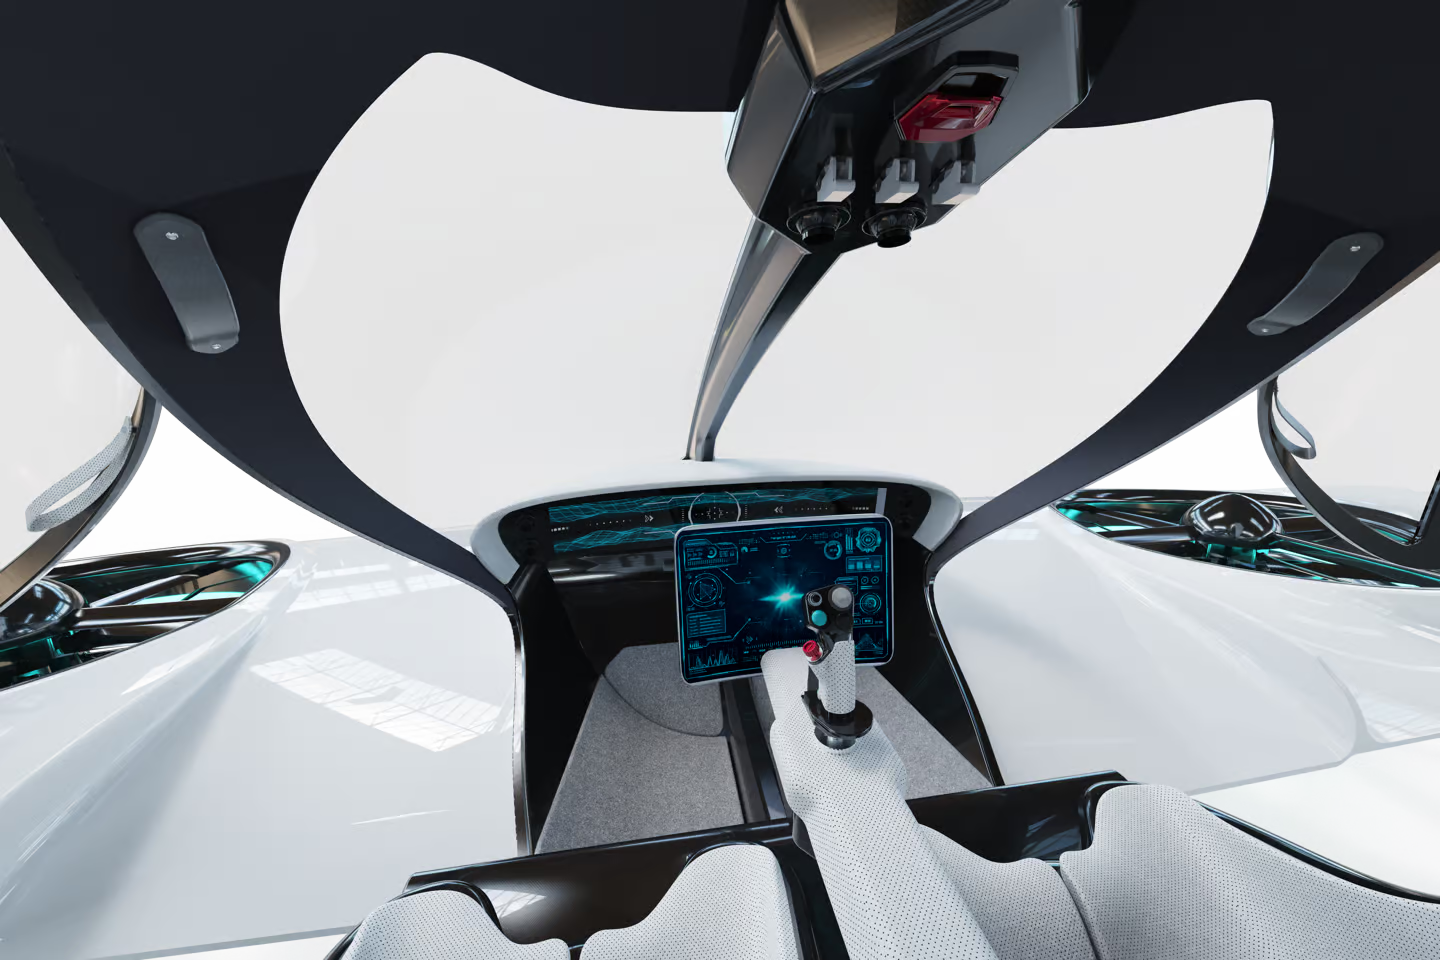 Doroni 发布旗舰电动垂直起降飞行器 H1-X：40 分钟续航、最高时速超 190 公里